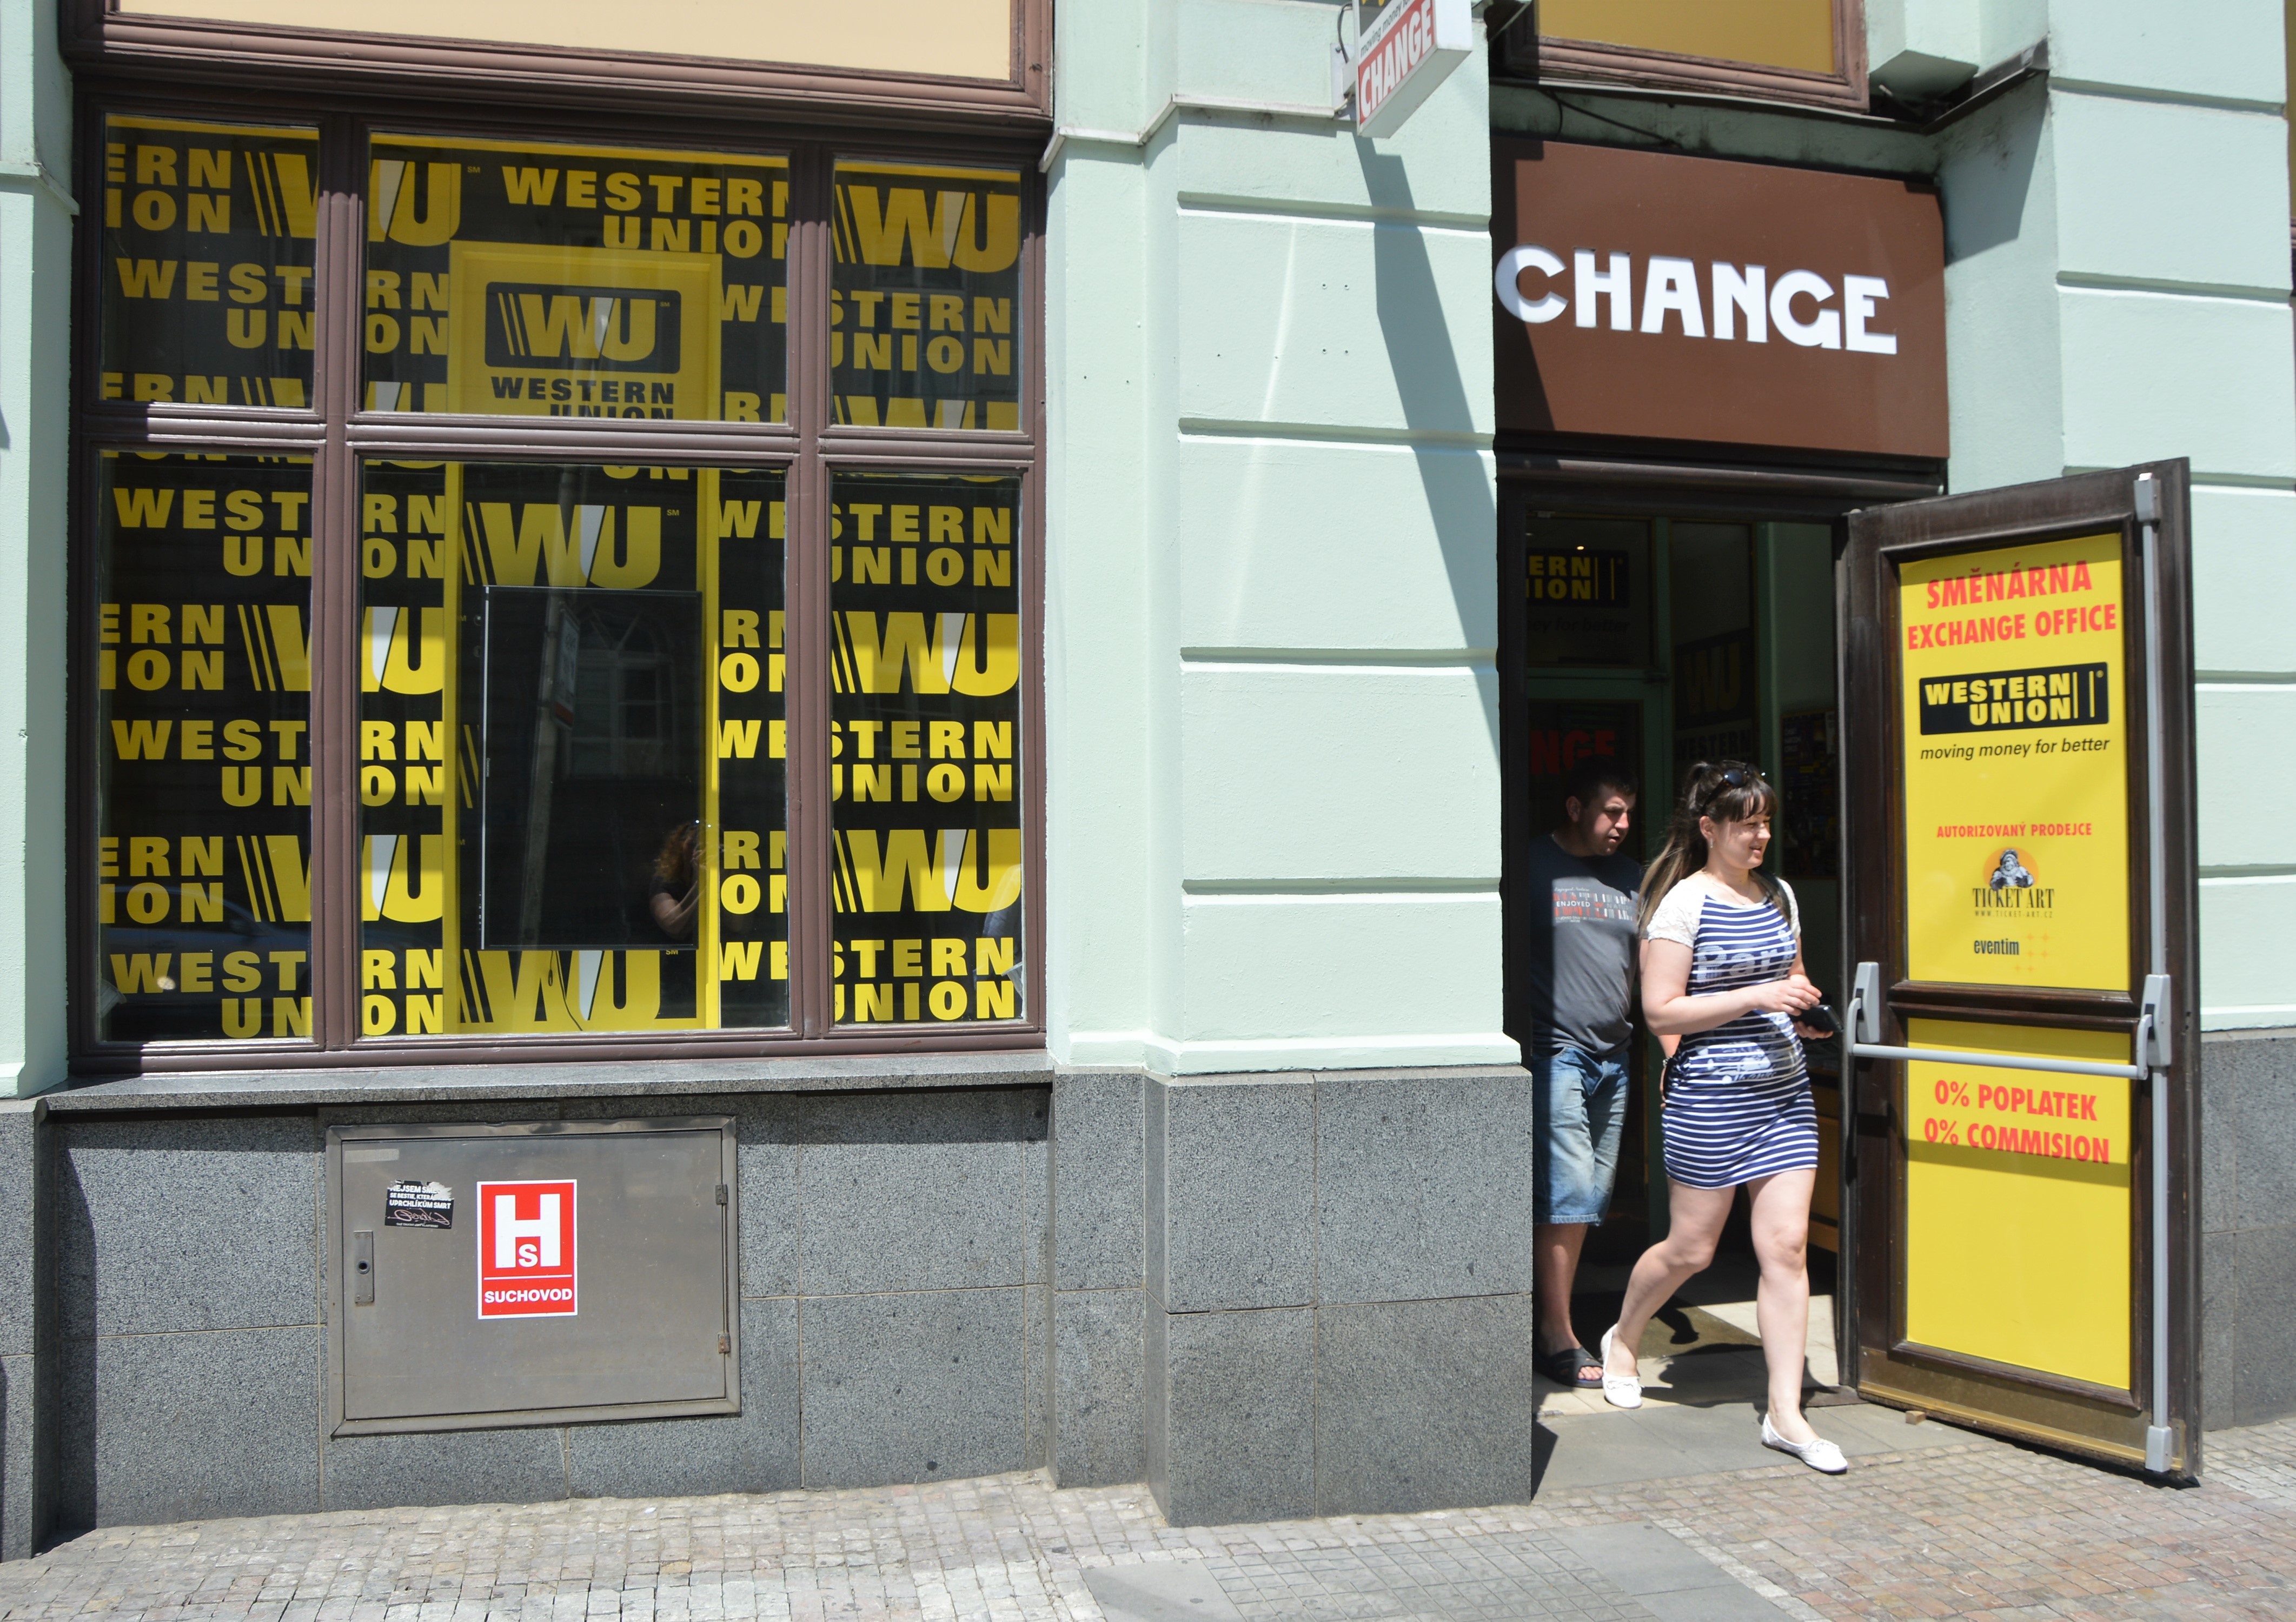 Exchange office Western Union Prague